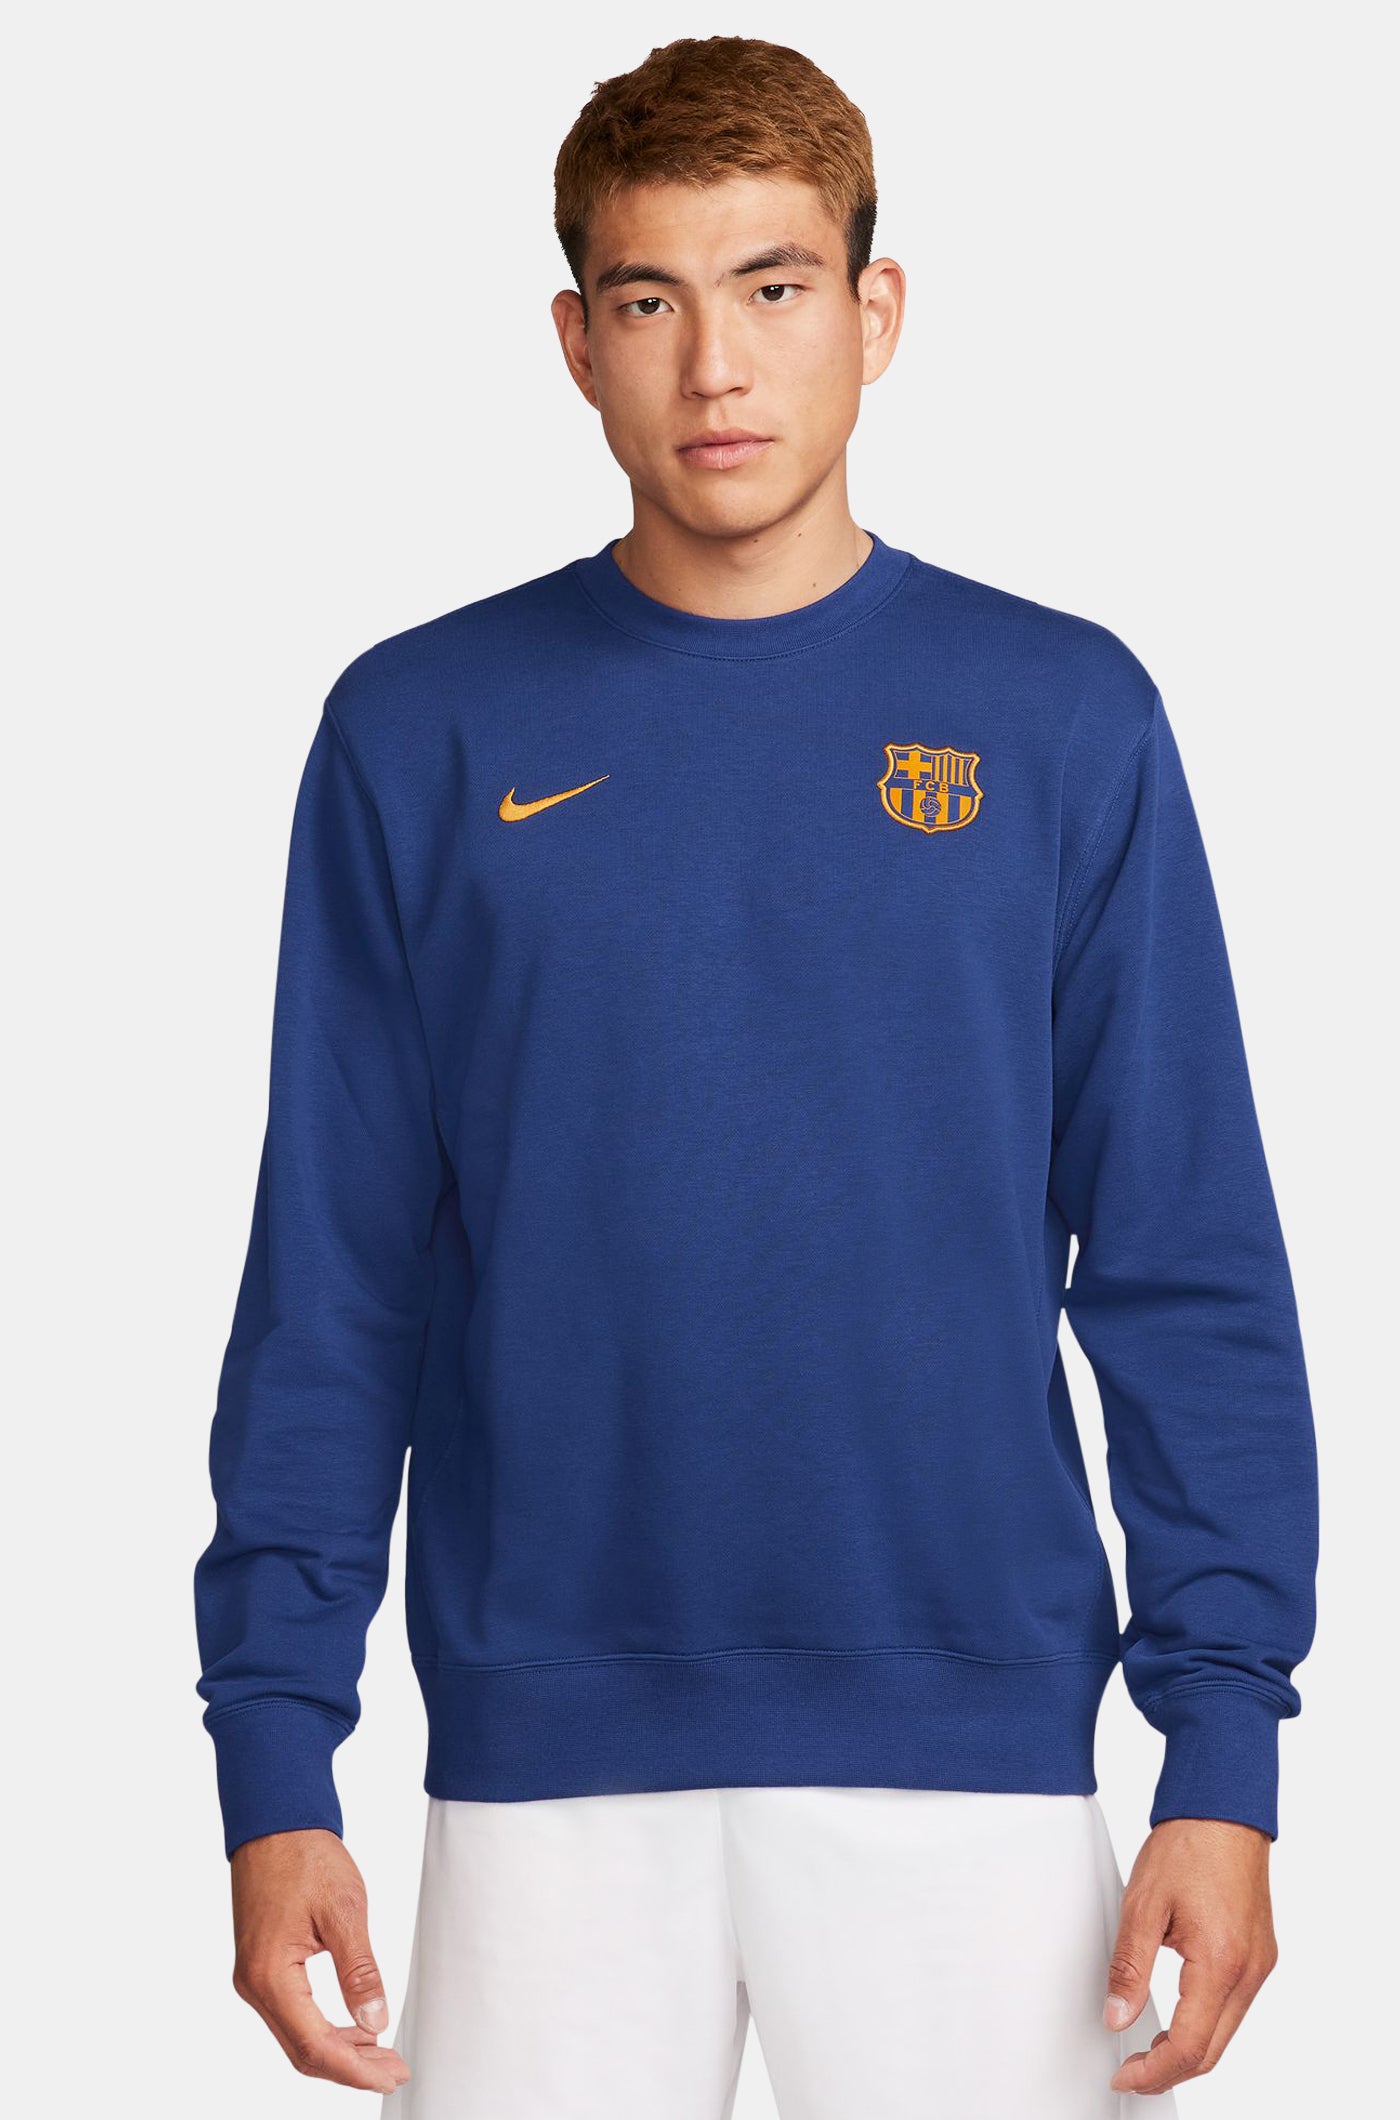  Sweat bleu royal Barça Nike